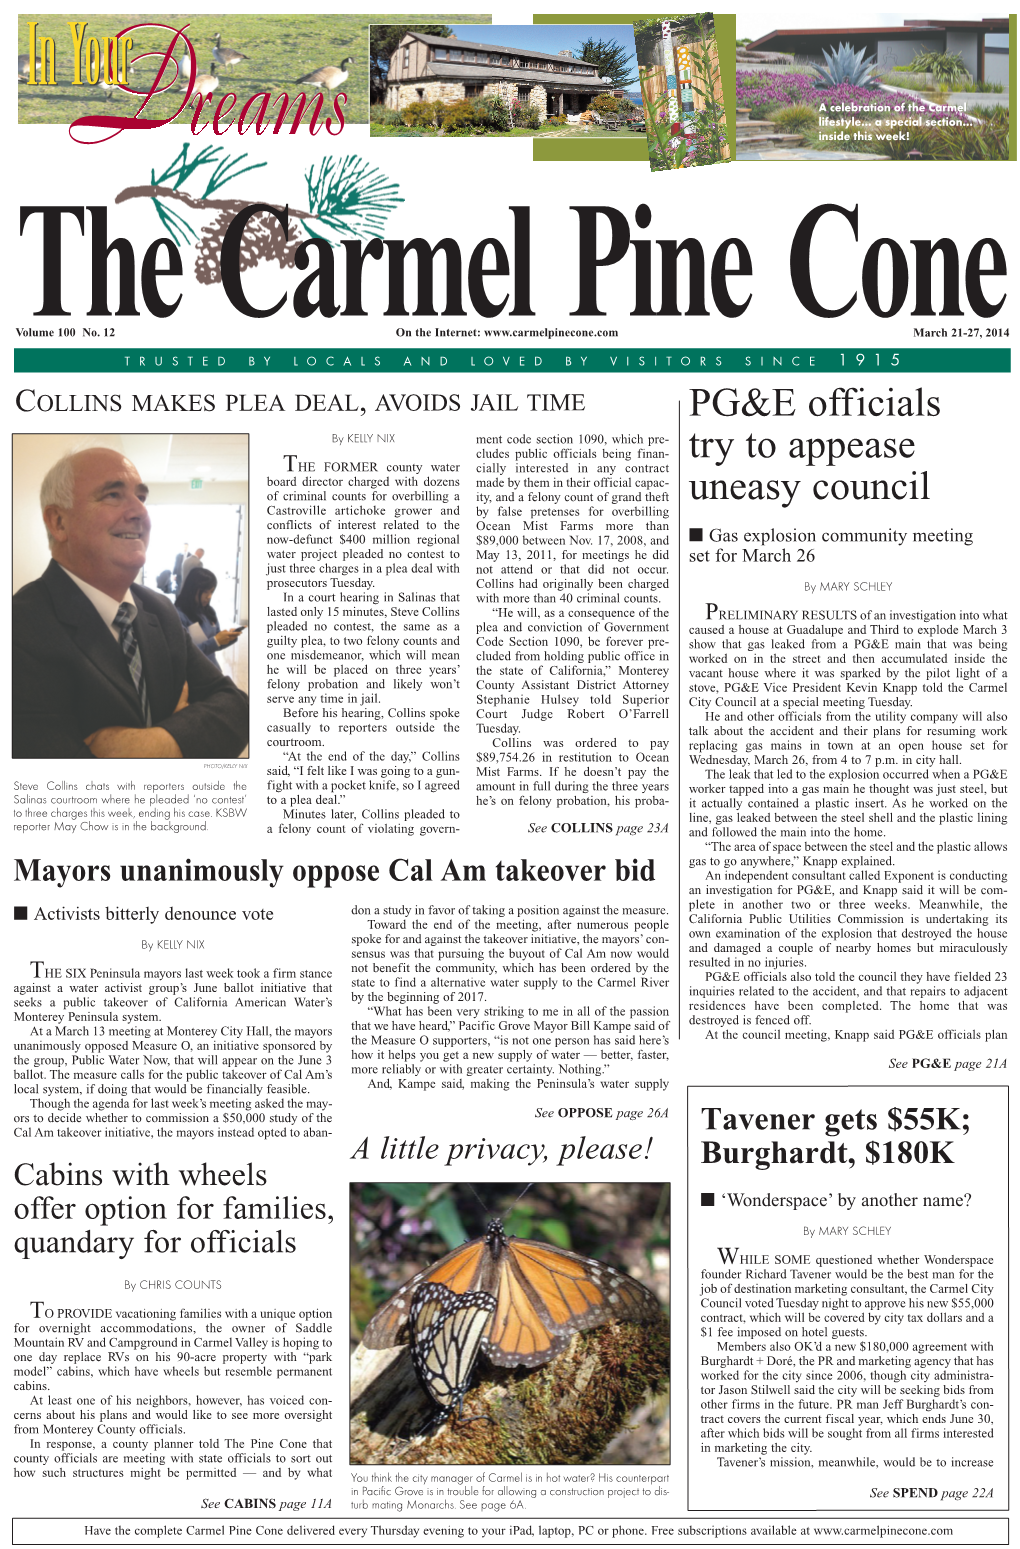 Carmel Pine Cone, March 21, 2014 (Main News)